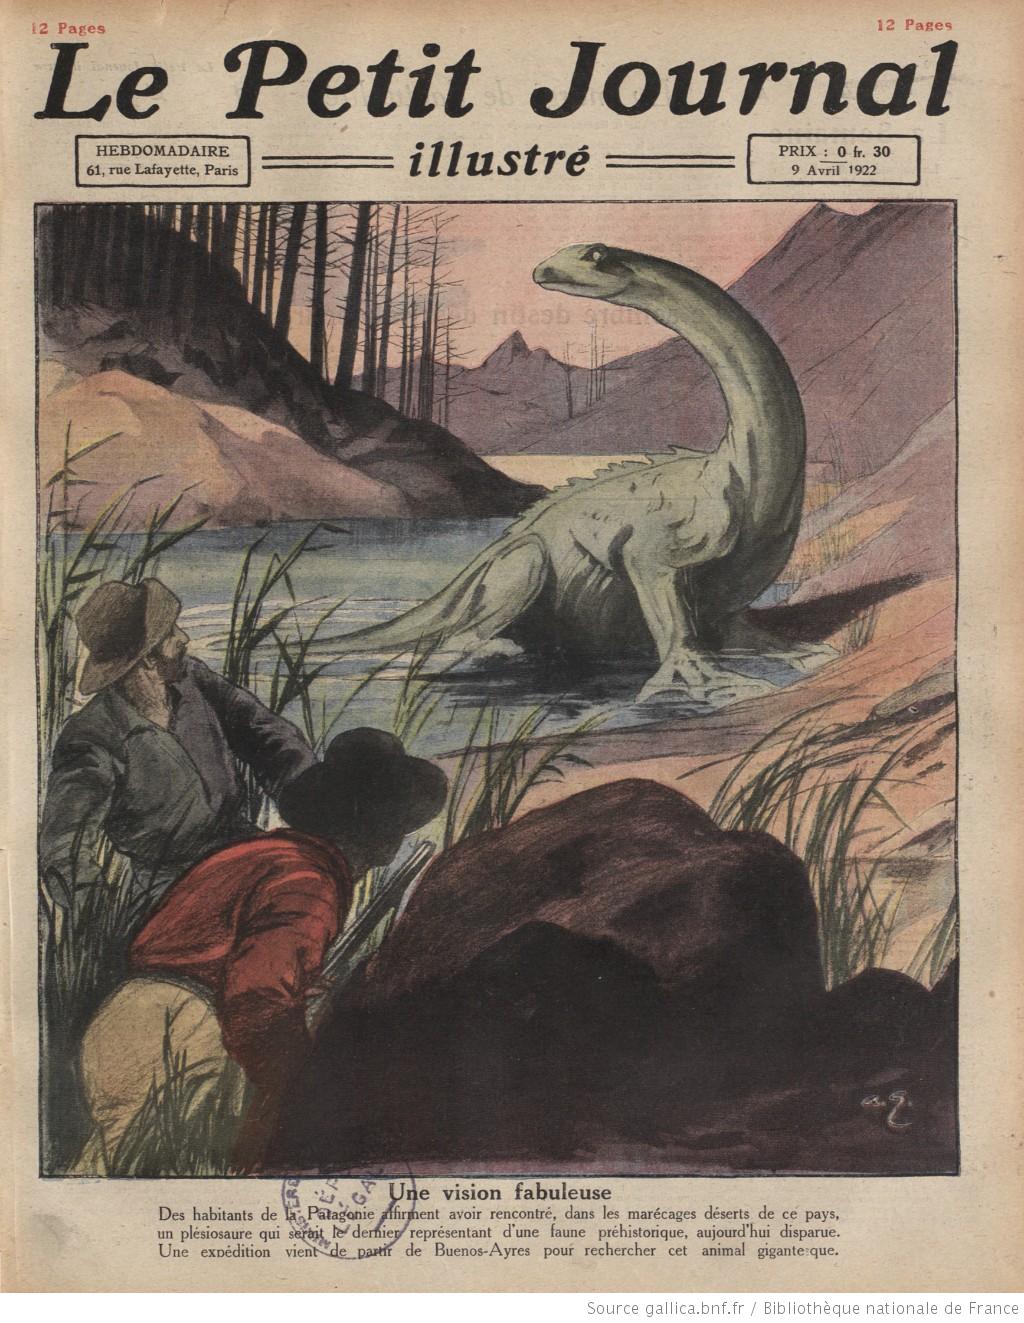 Couverture du Petit Journal Illustré le dimanche 9, relatant la découverte d'un            "plésiosaure" dans des marécages de Patagonie